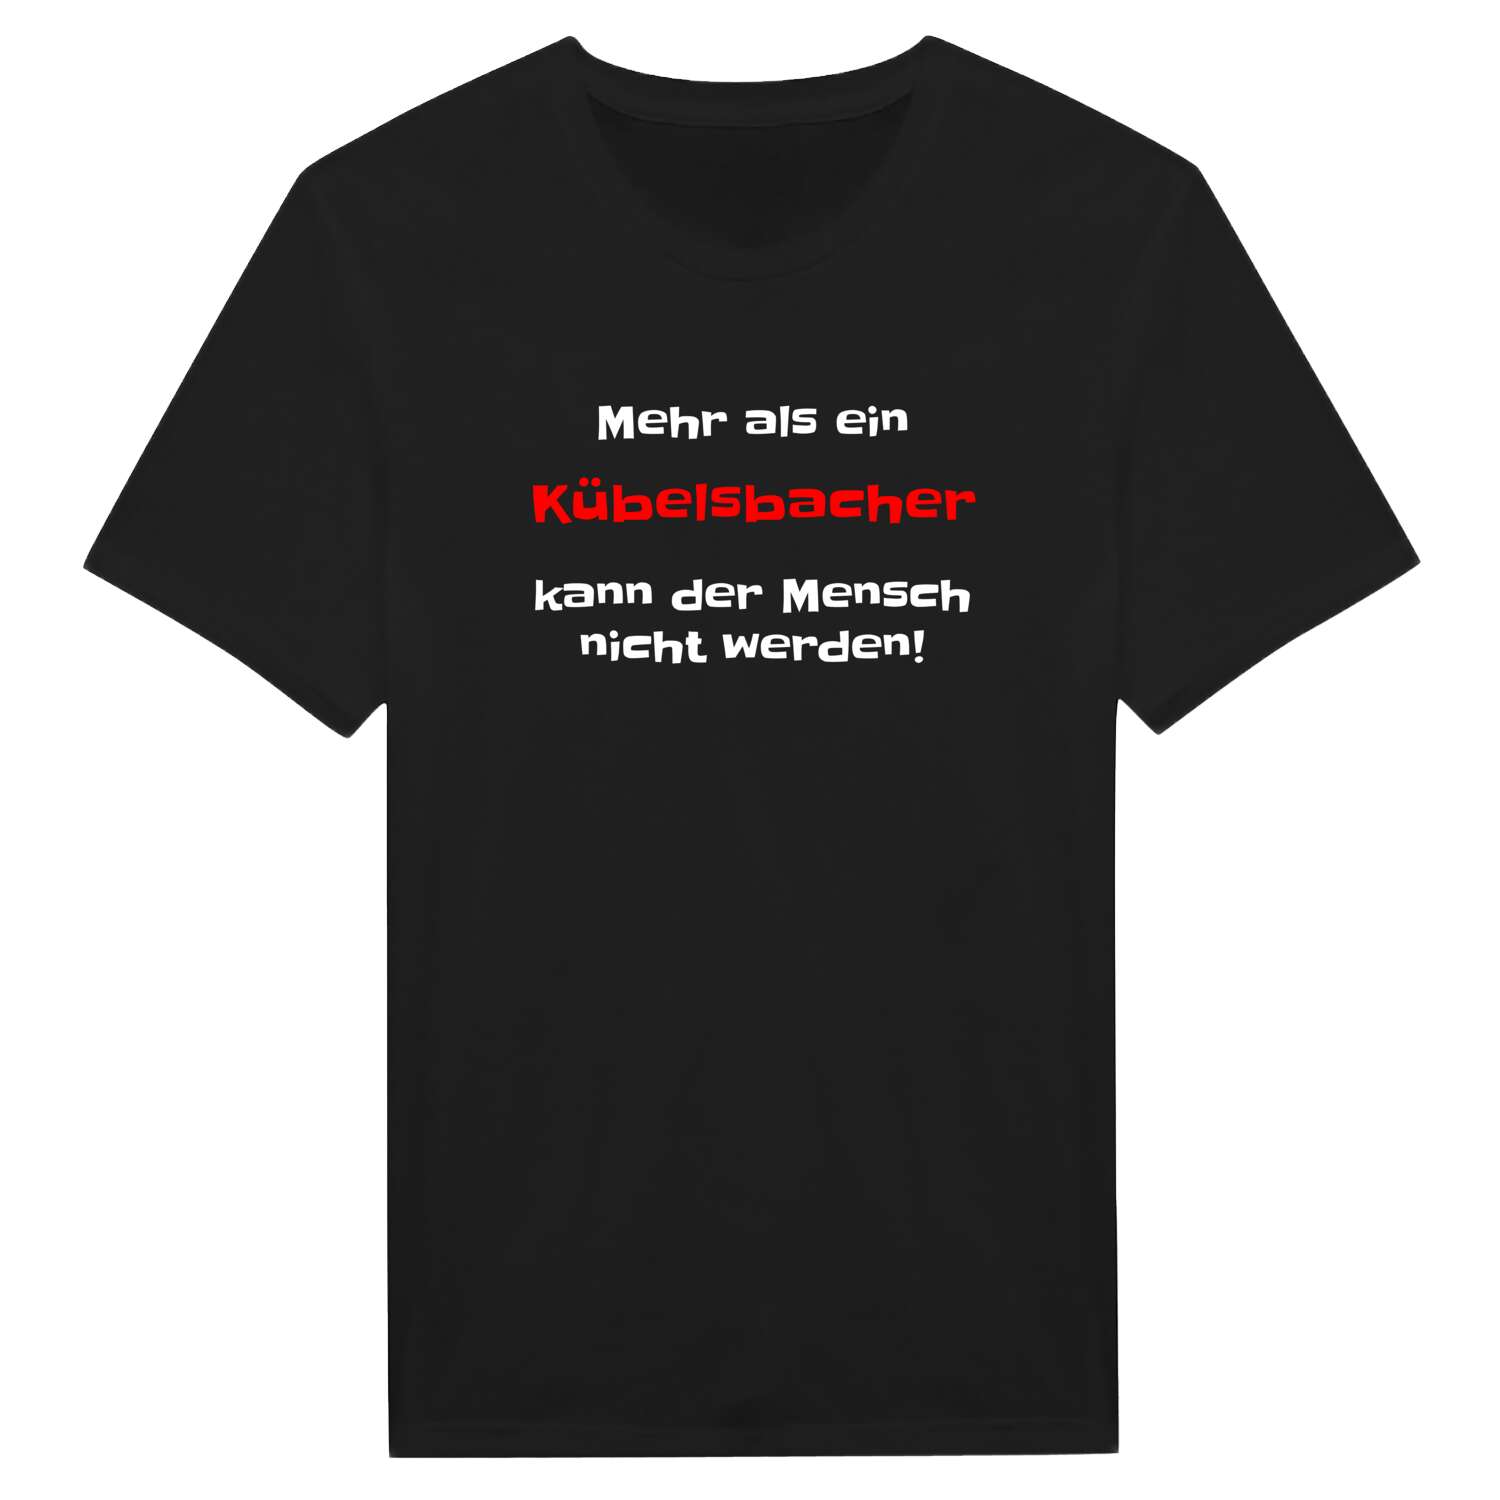 Kübelsbach T-Shirt »Mehr als ein«